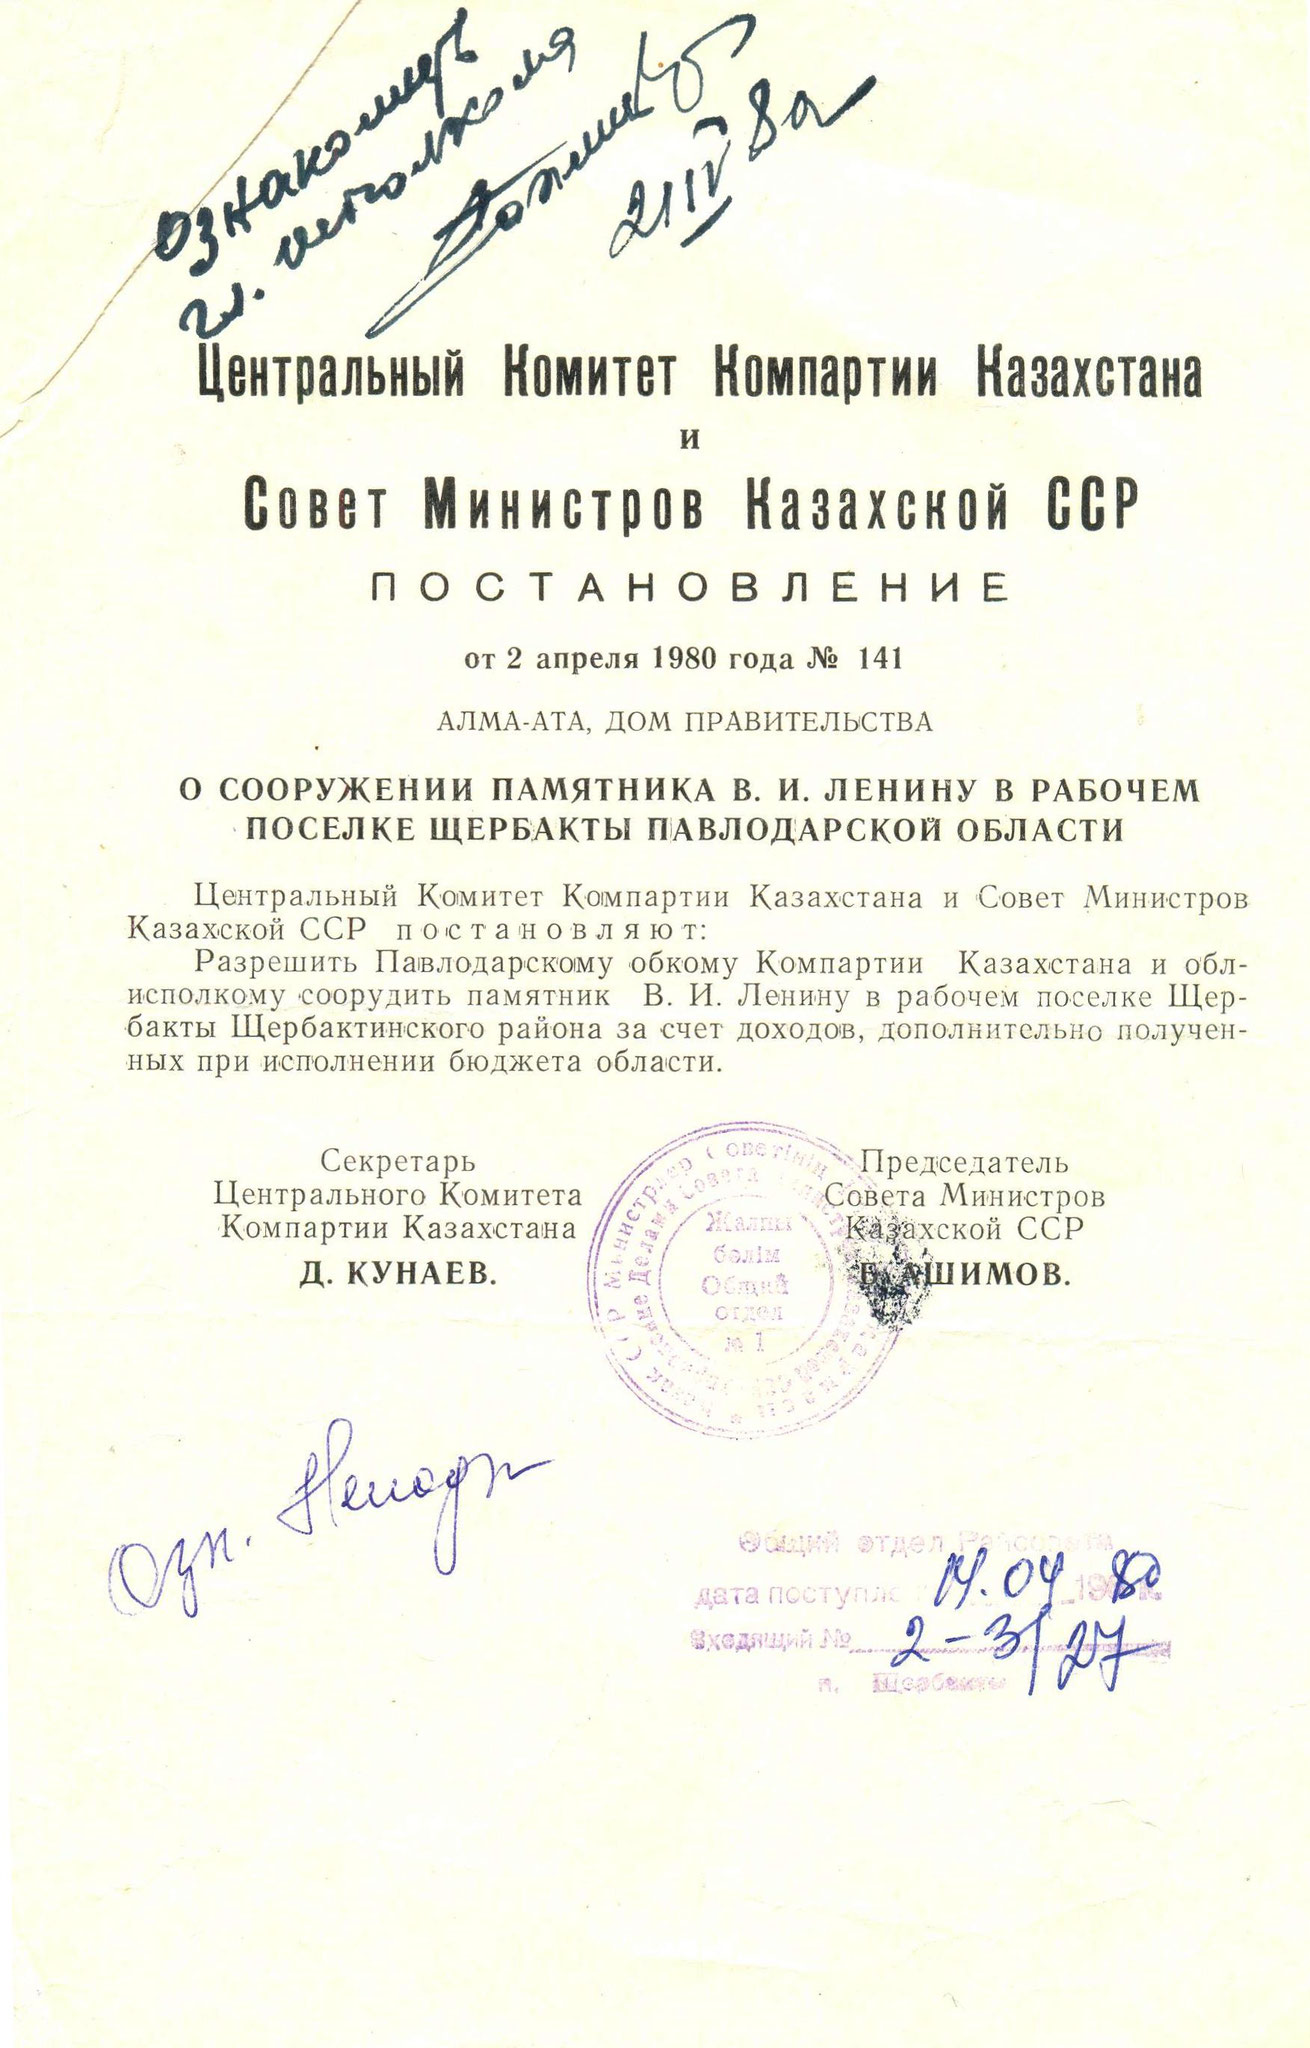 Постановление о сооружении памятника В.И. Ленину от 2 апреля 1980 года